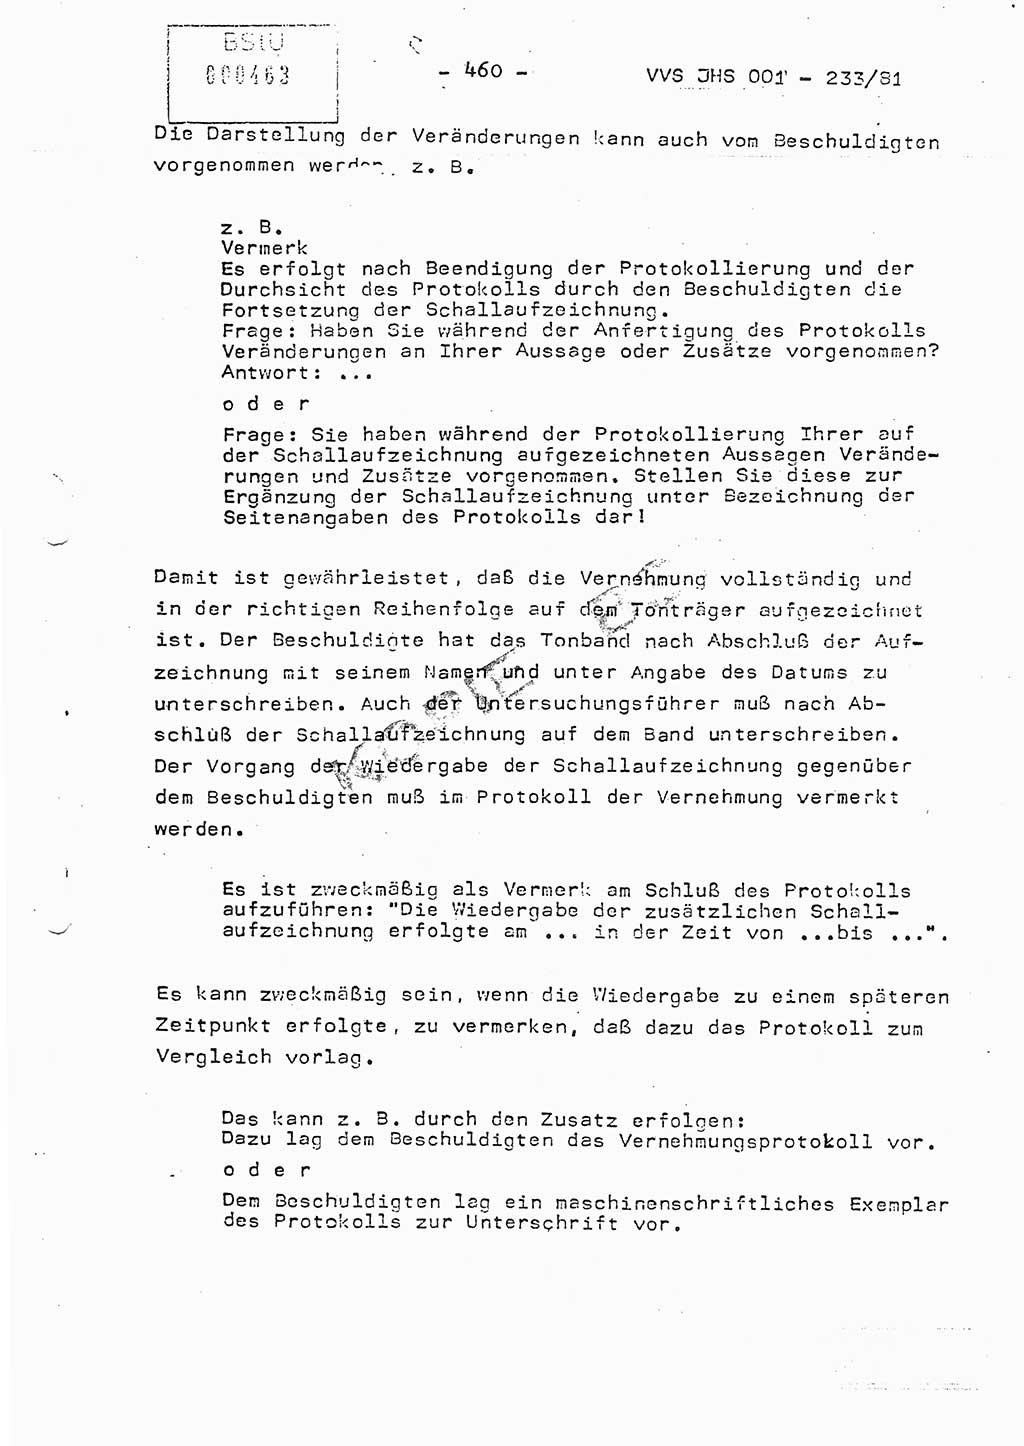 Dissertation Oberstleutnant Horst Zank (JHS), Oberstleutnant Dr. Karl-Heinz Knoblauch (JHS), Oberstleutnant Gustav-Adolf Kowalewski (HA Ⅸ), Oberstleutnant Wolfgang Plötner (HA Ⅸ), Ministerium für Staatssicherheit (MfS) [Deutsche Demokratische Republik (DDR)], Juristische Hochschule (JHS), Vertrauliche Verschlußsache (VVS) o001-233/81, Potsdam 1981, Blatt 460 (Diss. MfS DDR JHS VVS o001-233/81 1981, Bl. 460)